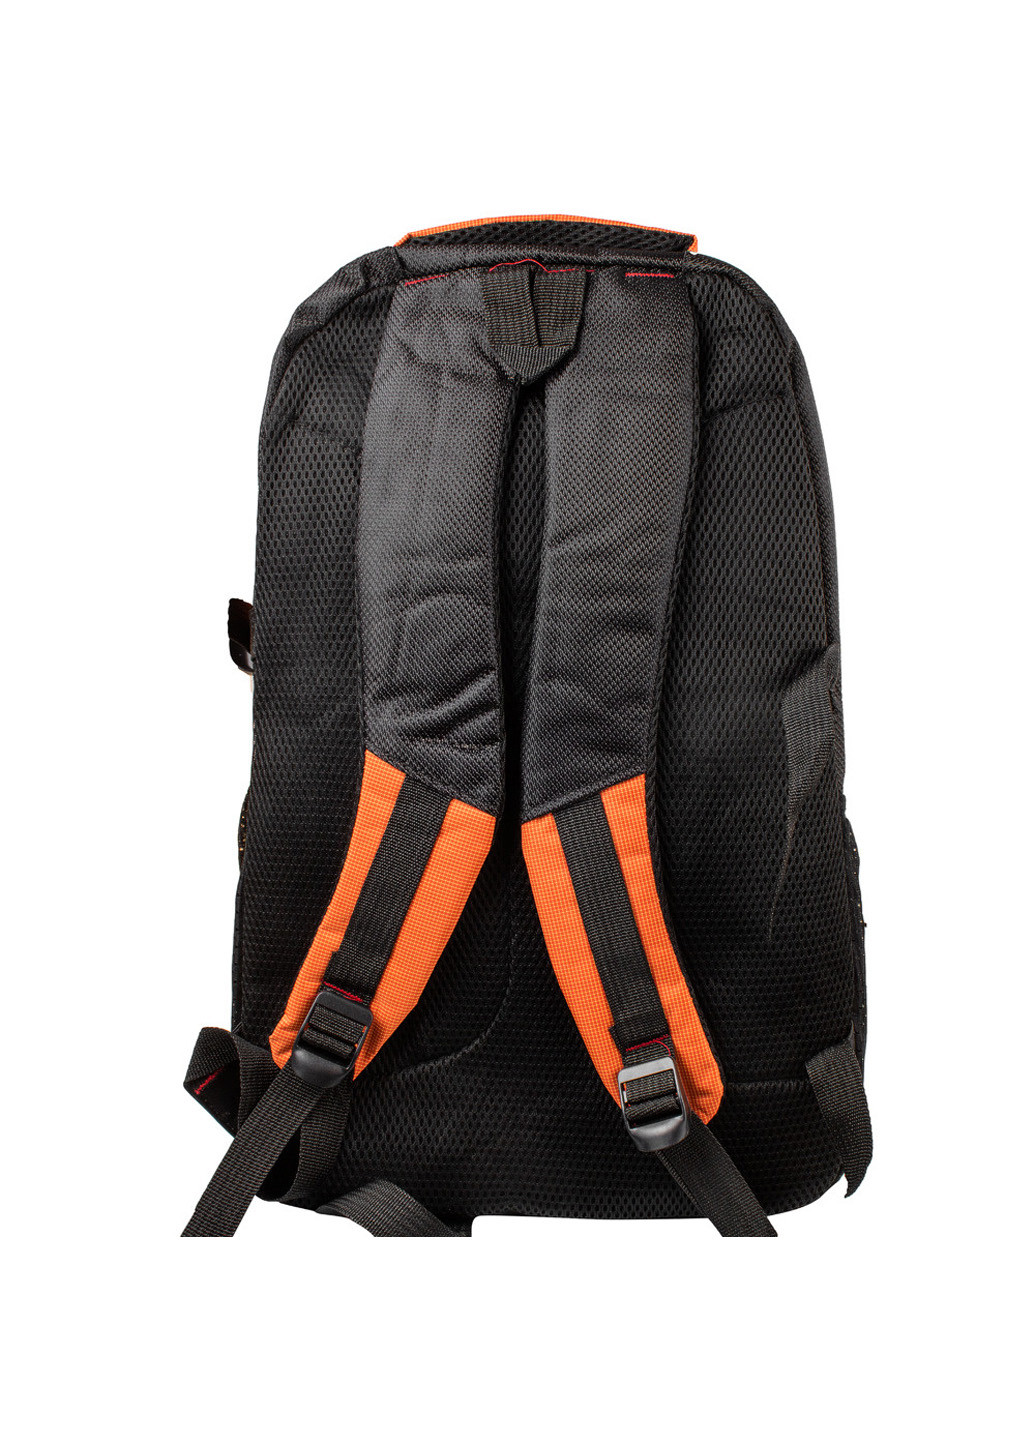 Мужской спортивный рюкзак 33х48х22 см Valiria Fashion оранжевый